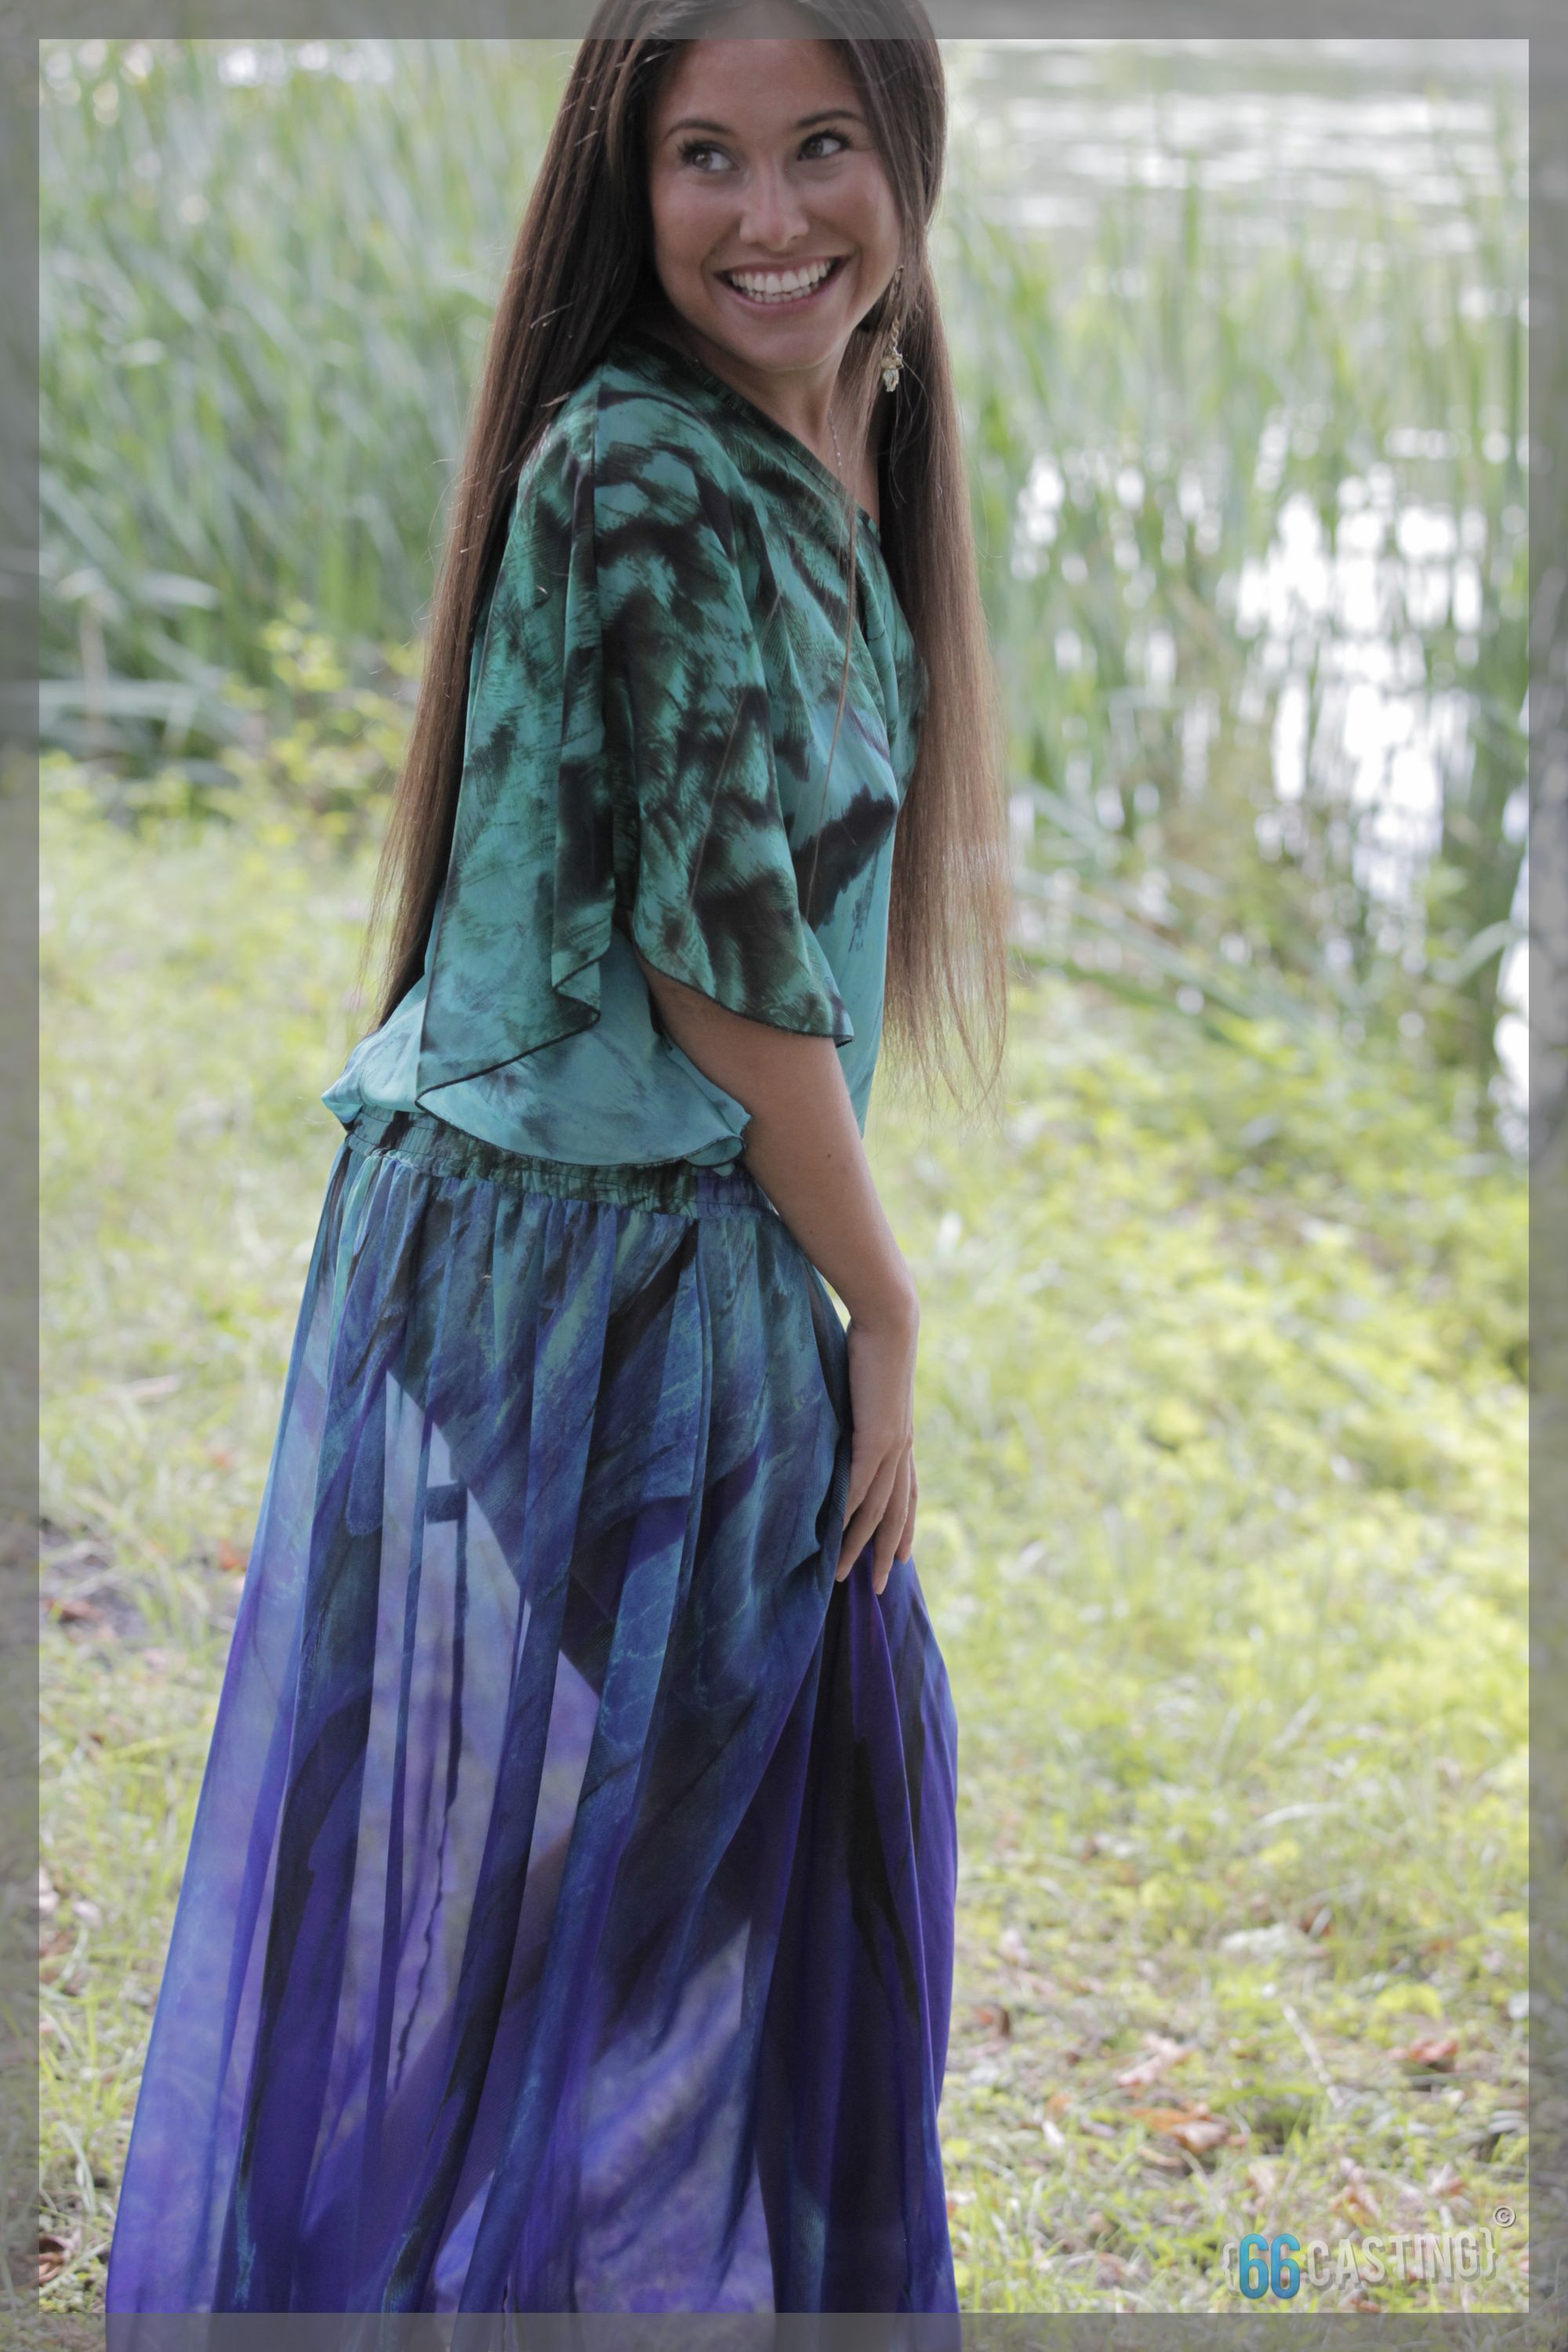 Фигура Иланы Юрьевой обладает идеальными пропорциями, что делает ее внешность привлекательной и притягательной.